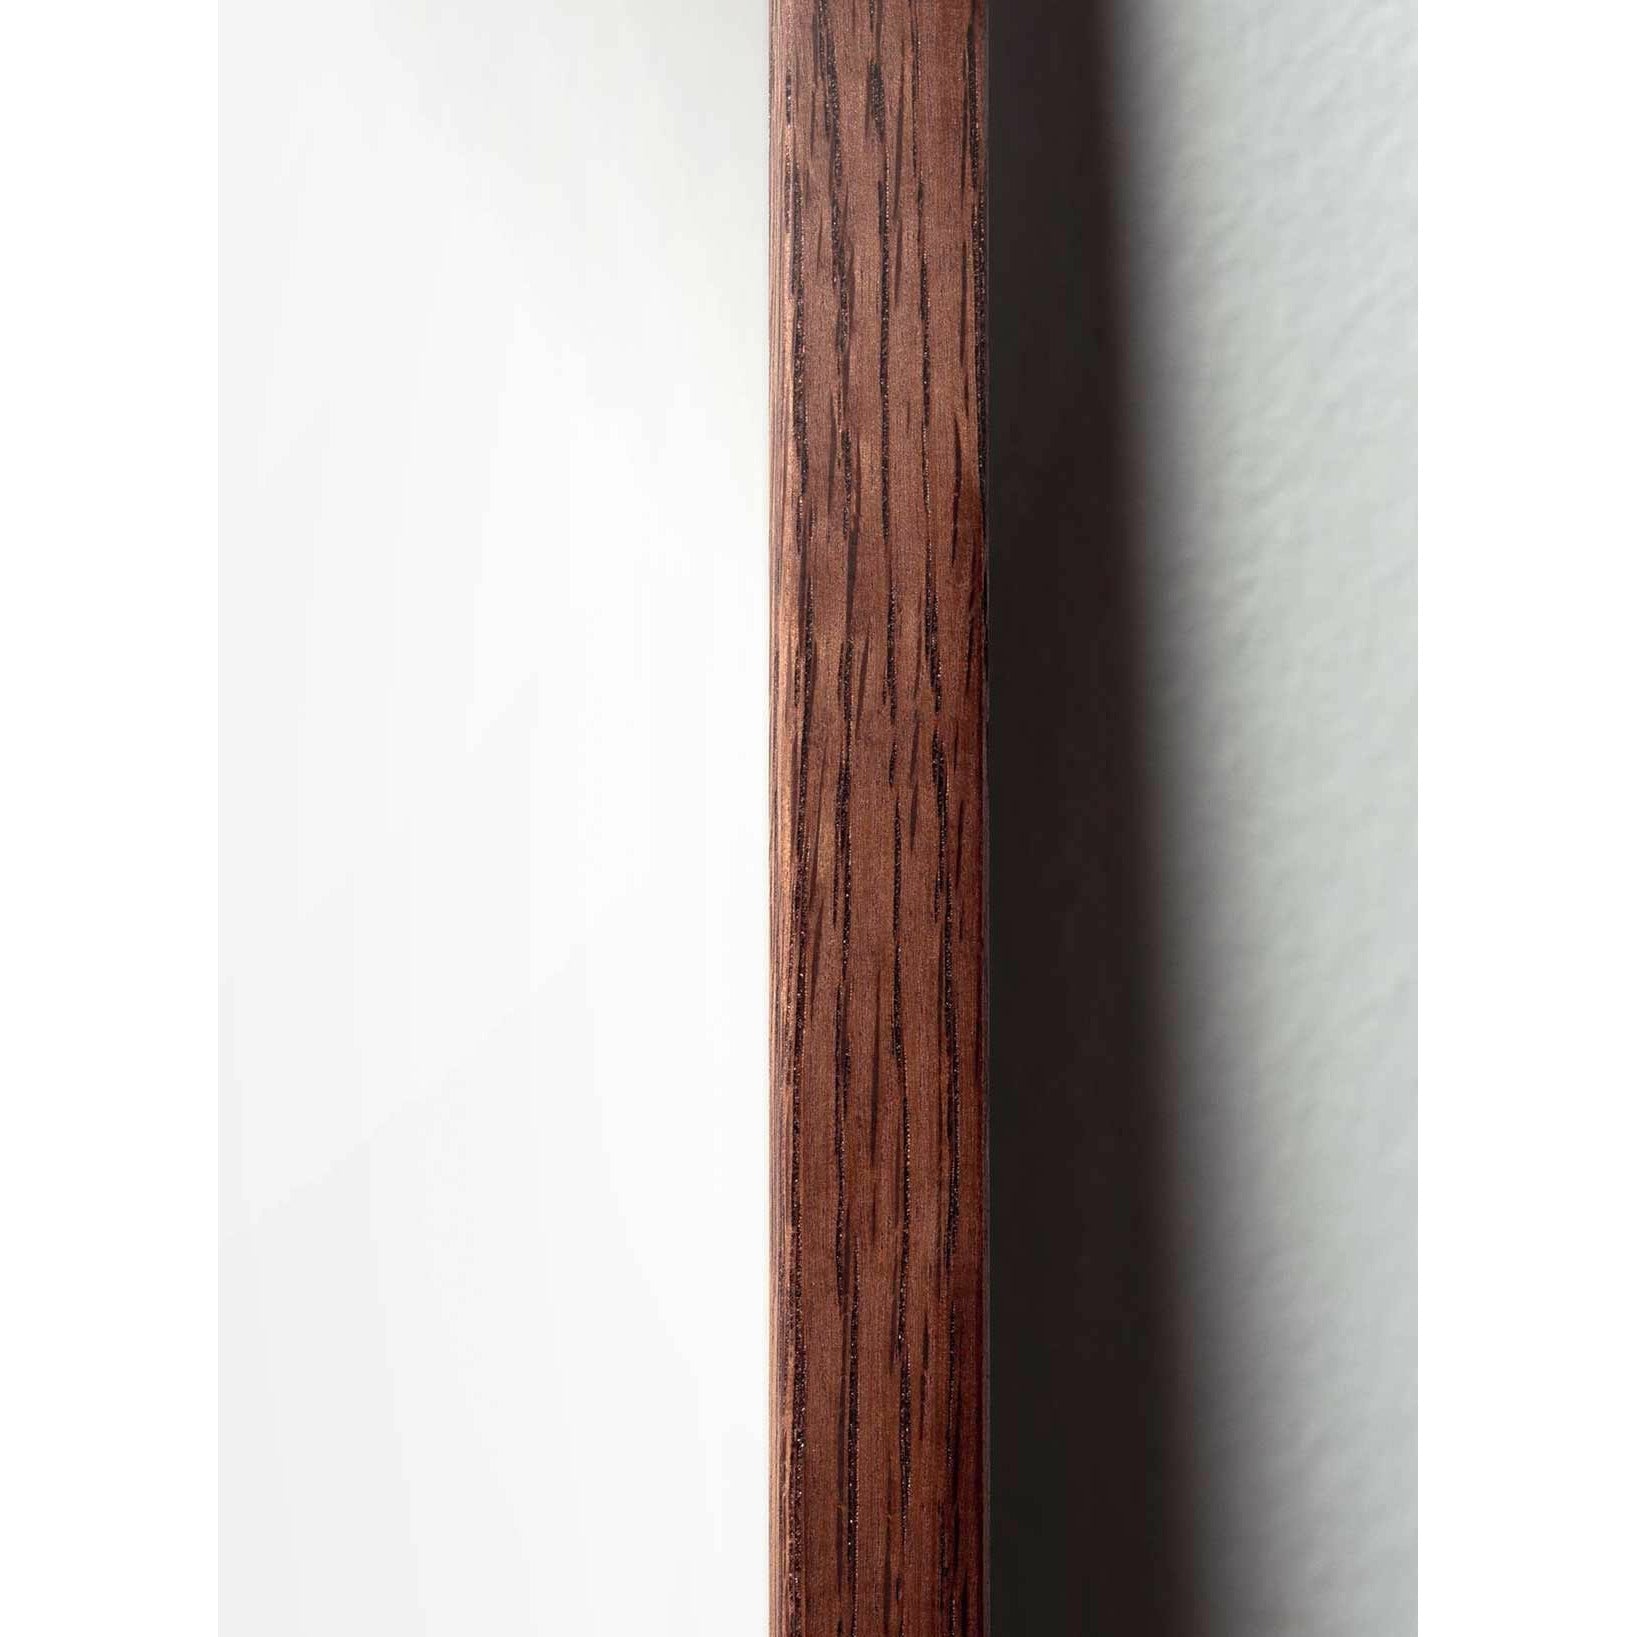 Póster de línea de cono de pino de creación, marco hecho de madera oscura de 70x100 cm, fondo blanco